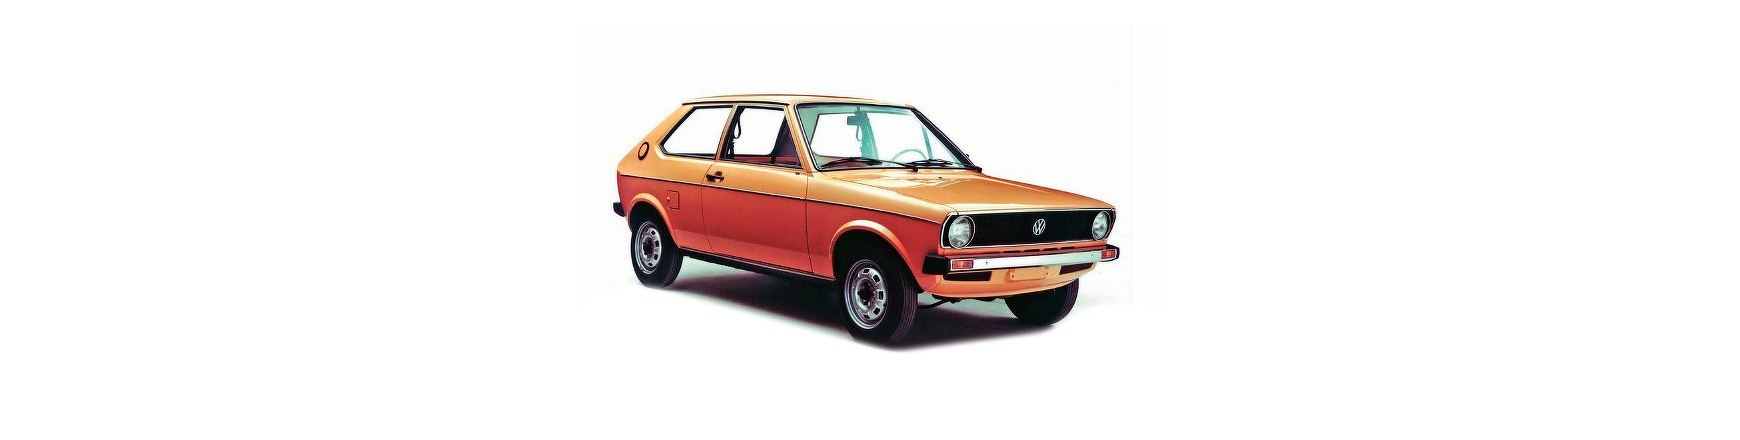 Piezas y Recambios de Volkswagen Polo (86) de 1975 a 1981 | Veramauto.es